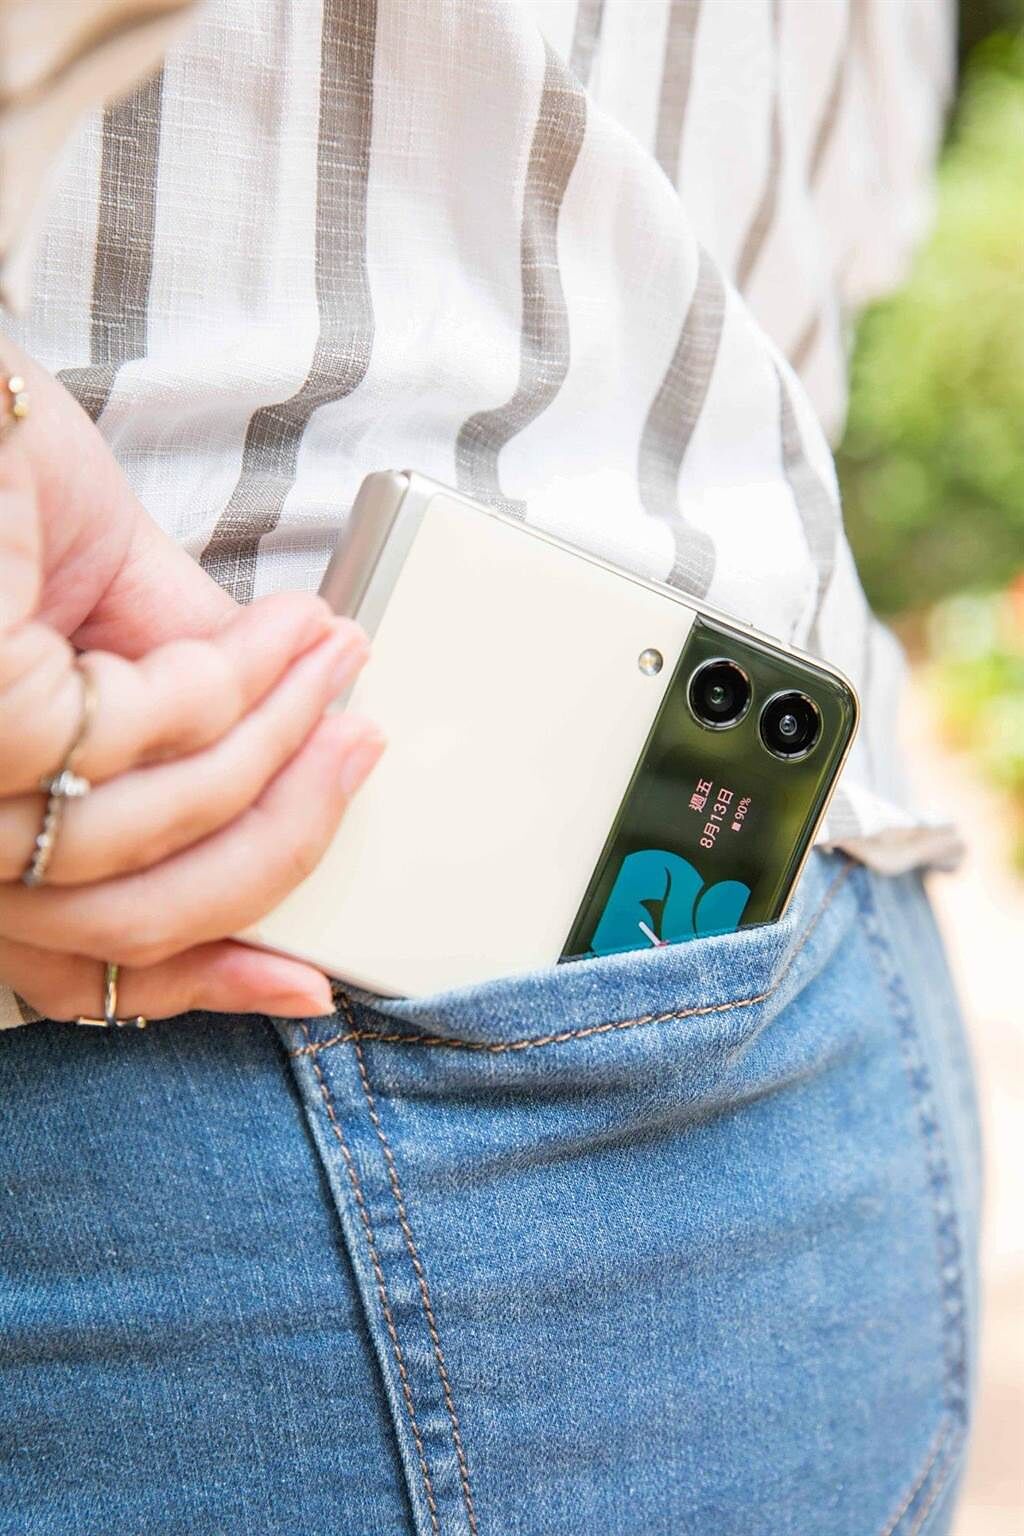 三星的Galaxy Z Flip3 5G，摺疊時為72.2 x 86.4 x 17.1mm-15.9mm，就算是女生的小手也能達到真正的一手掌握，而且還能輕鬆放進後口袋或小包包中。（石智中攝）